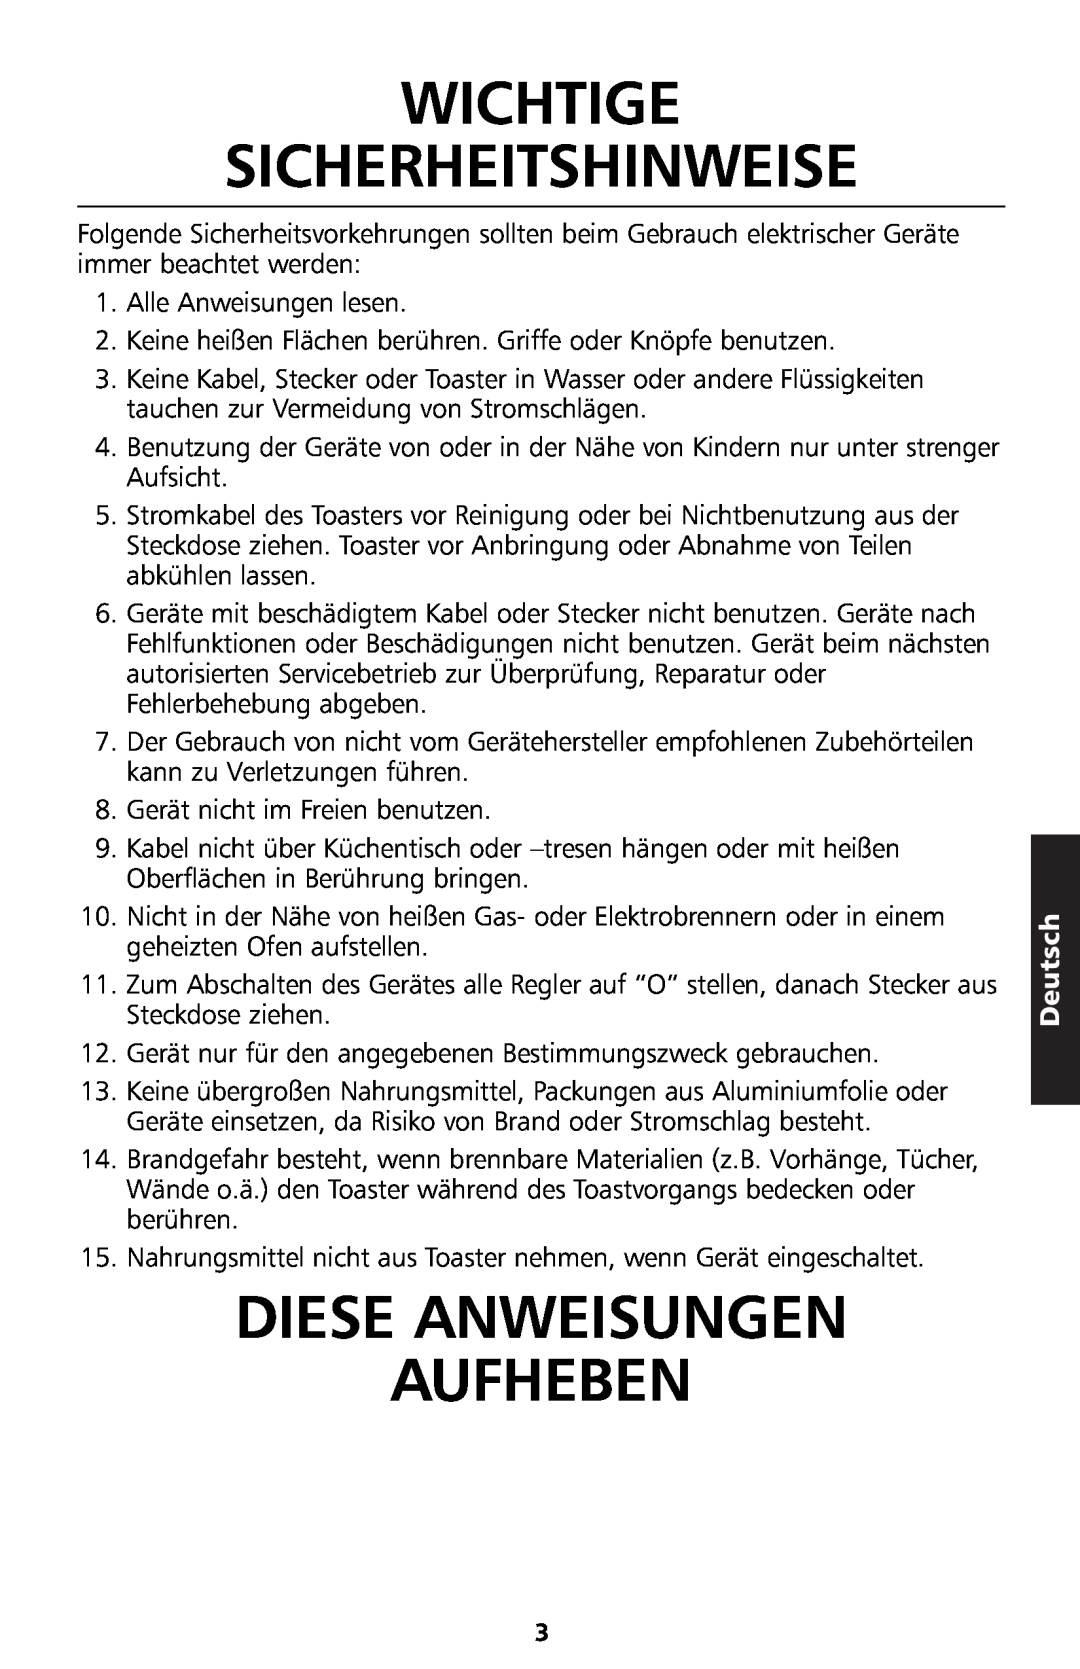 KitchenAid 5KTT890 manual Wichtige Sicherheitshinweise, Diese Anweisungen Aufheben, Deutsch 